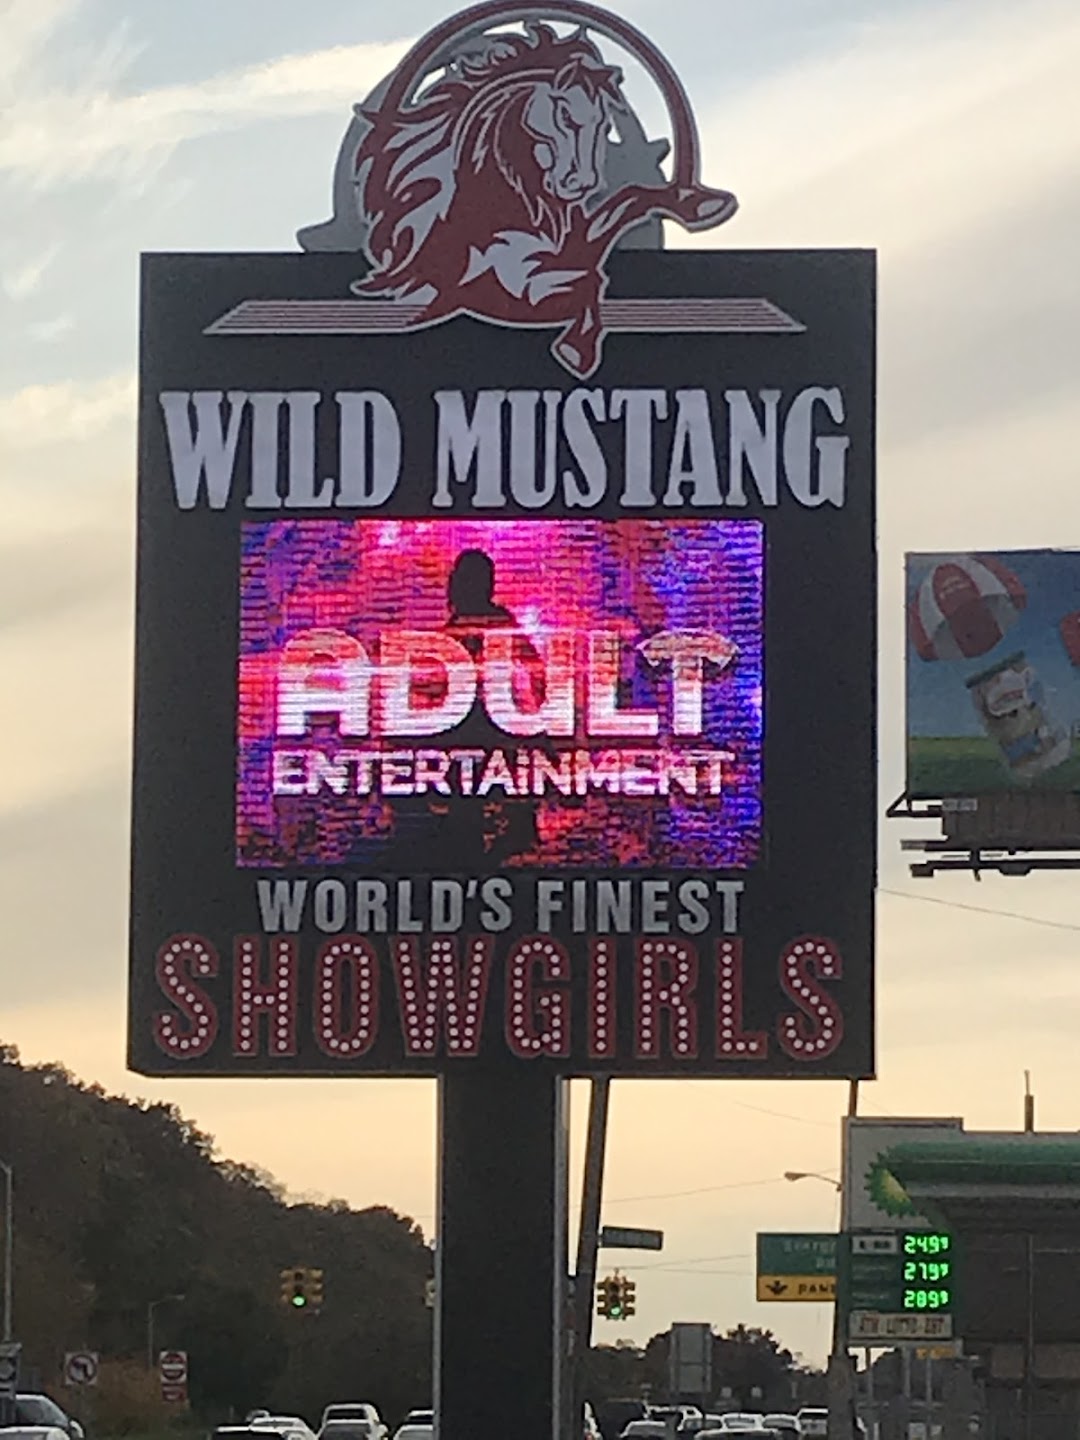 Wild Mustang Gentlemens Club